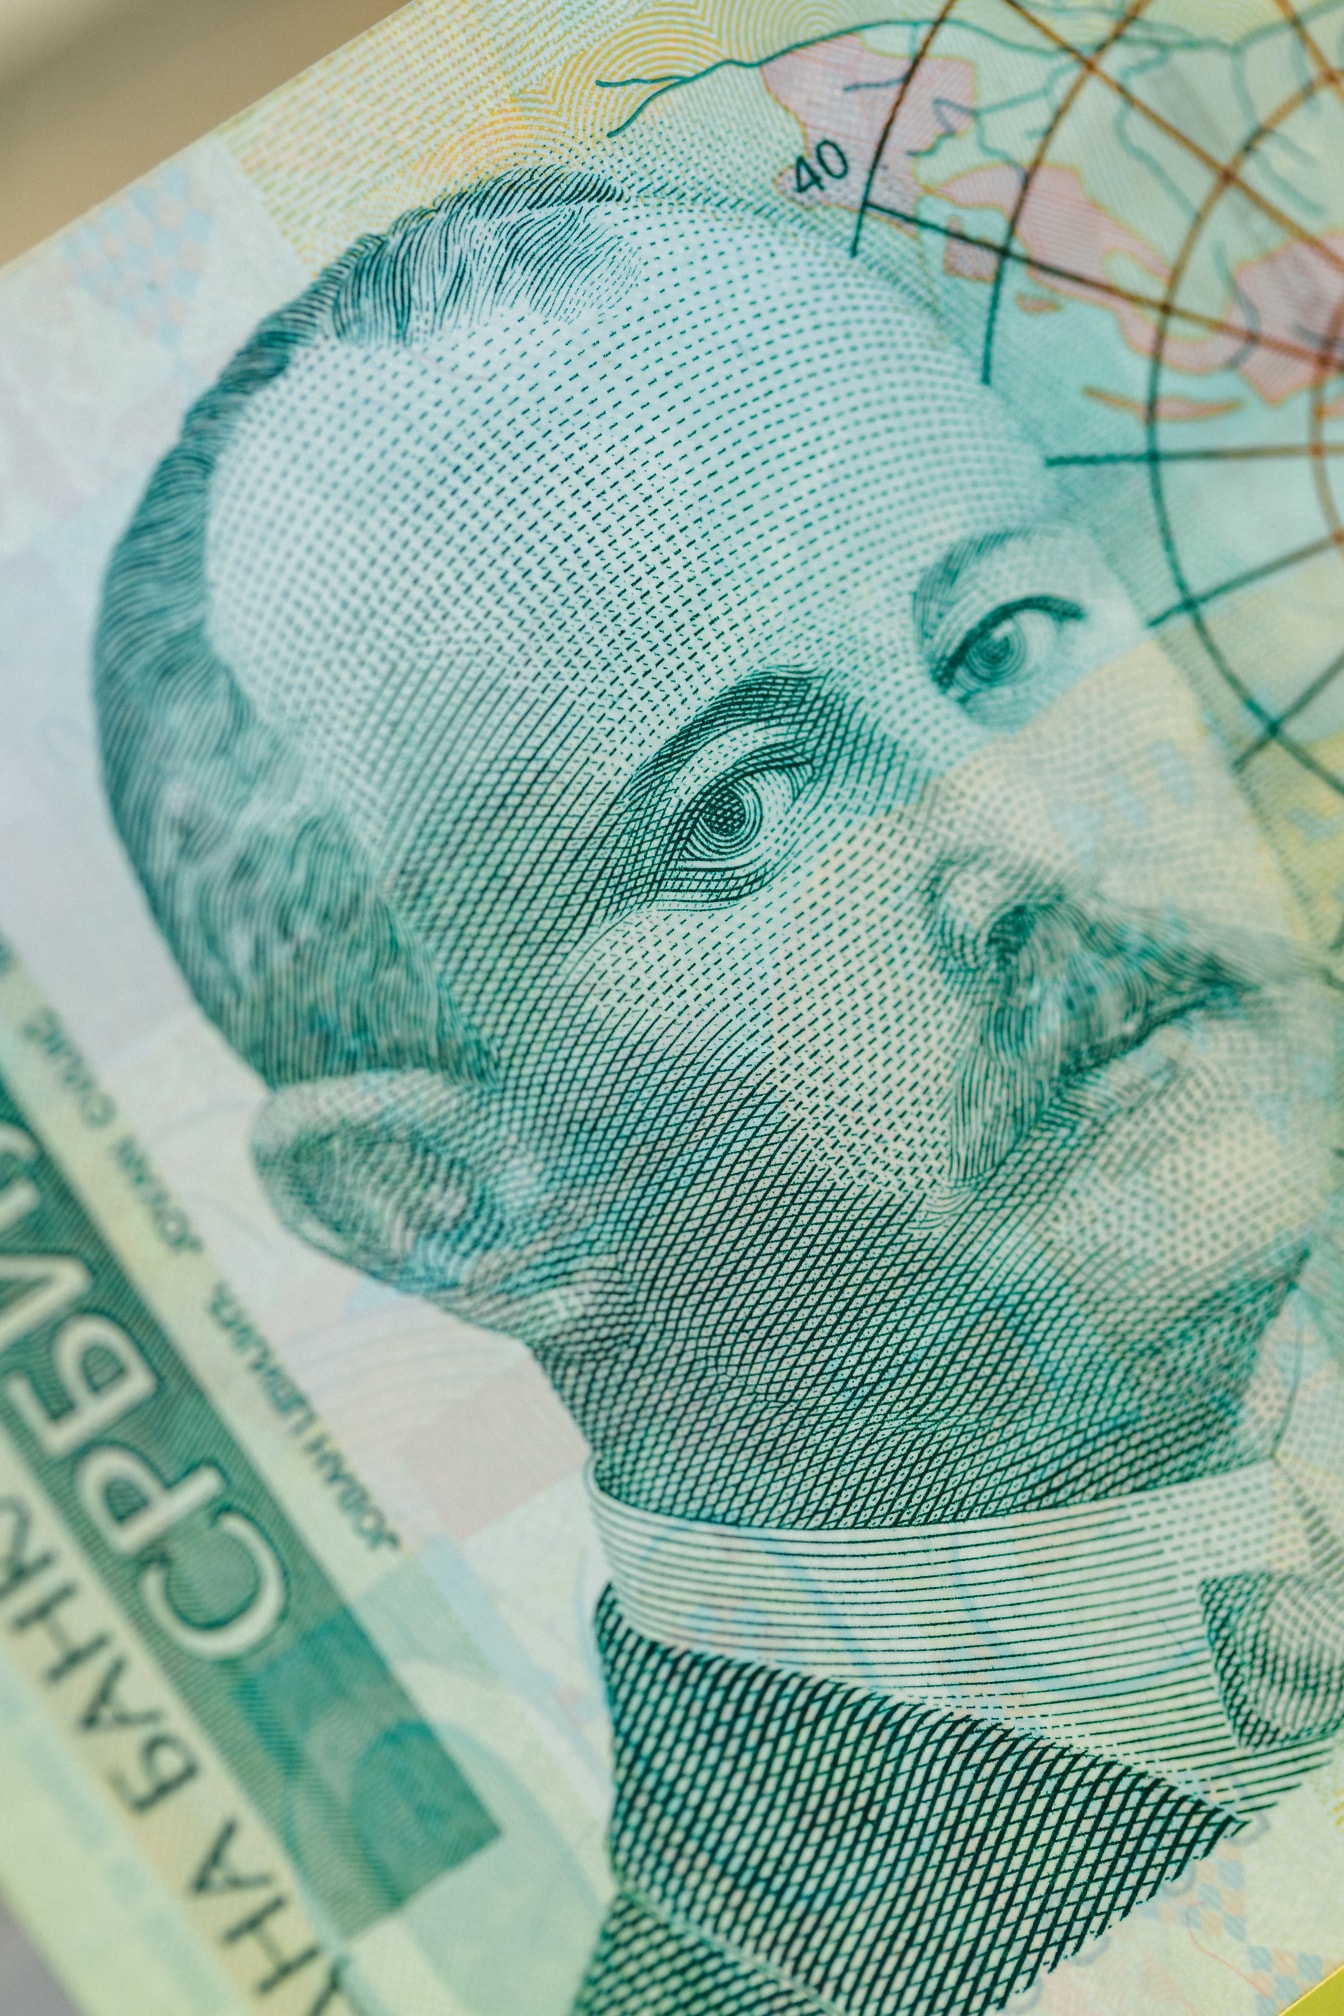 Close-upfoto van bankbiljet van 500 Servische dinar met portret van Jovan Cvijic